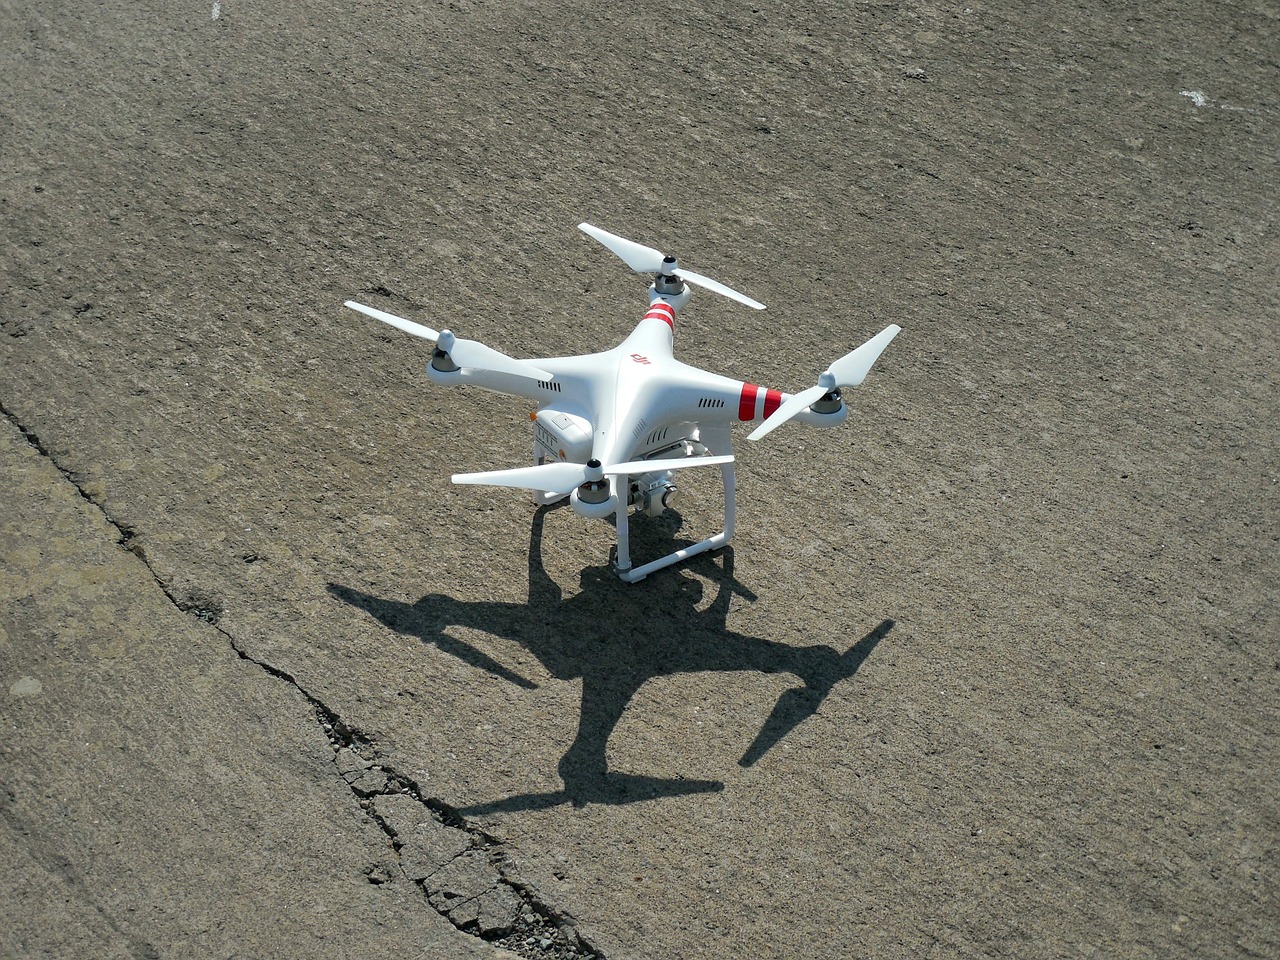 quadrocopter drone model free photo